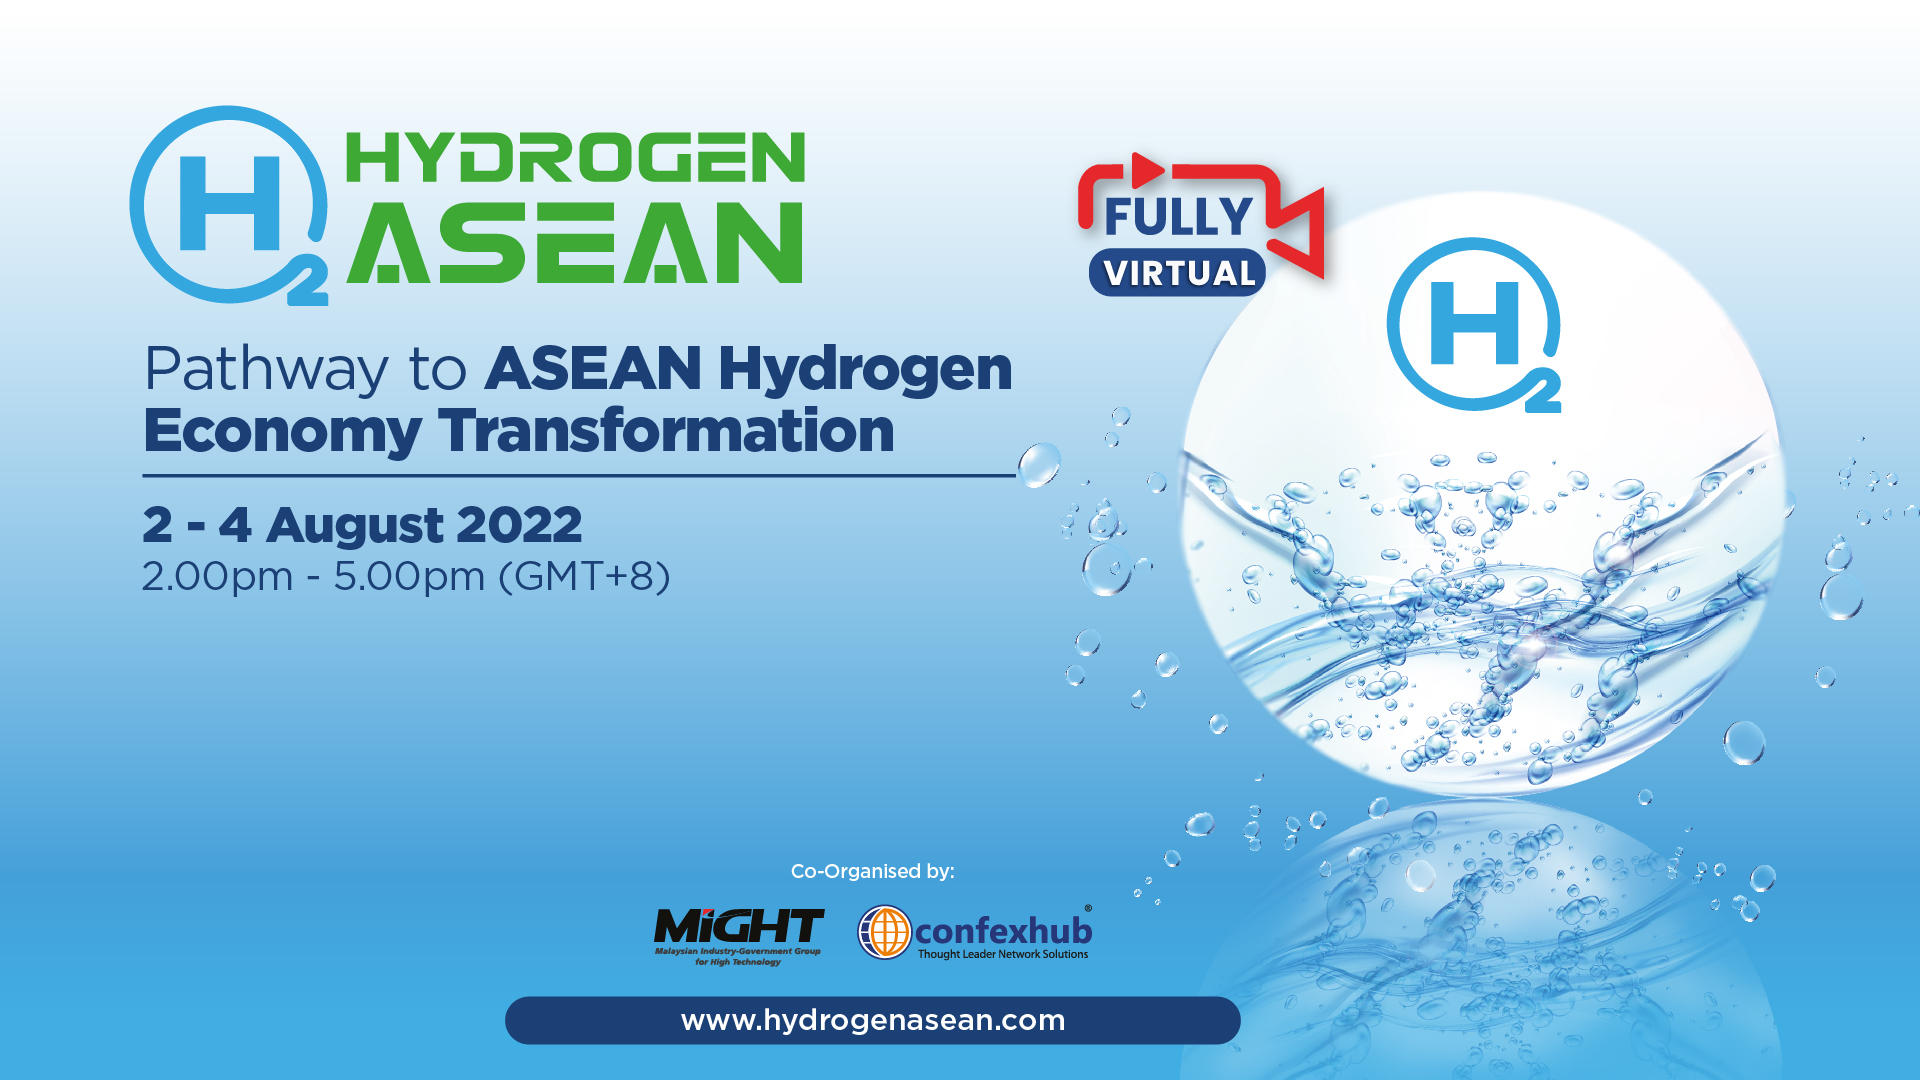 HYDROGEN ASEAN 2022, Online Event